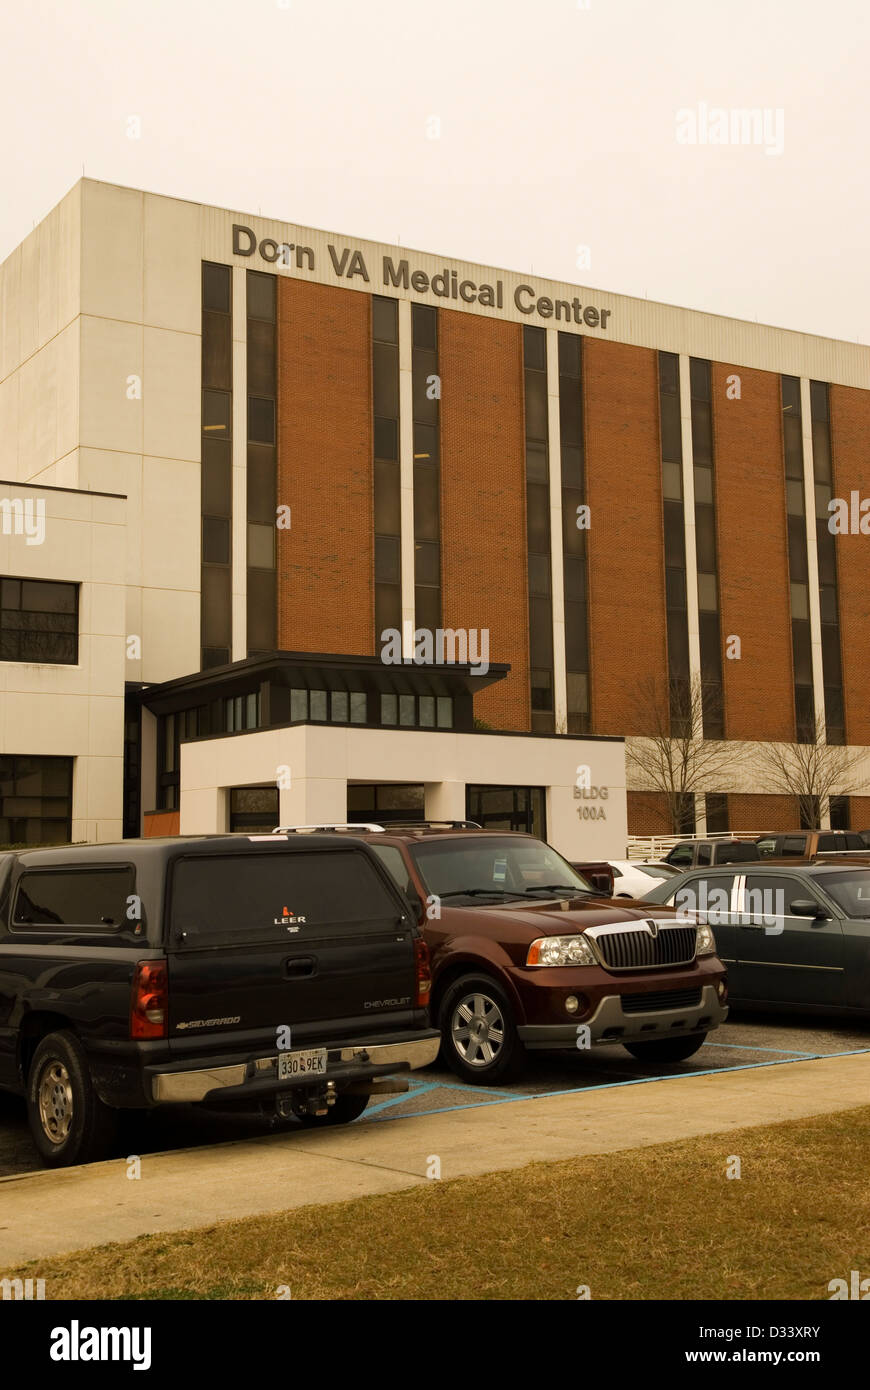 Dorn VA Medical Center di Columbia nella Carolina del Sud NEGLI STATI UNITI Foto Stock